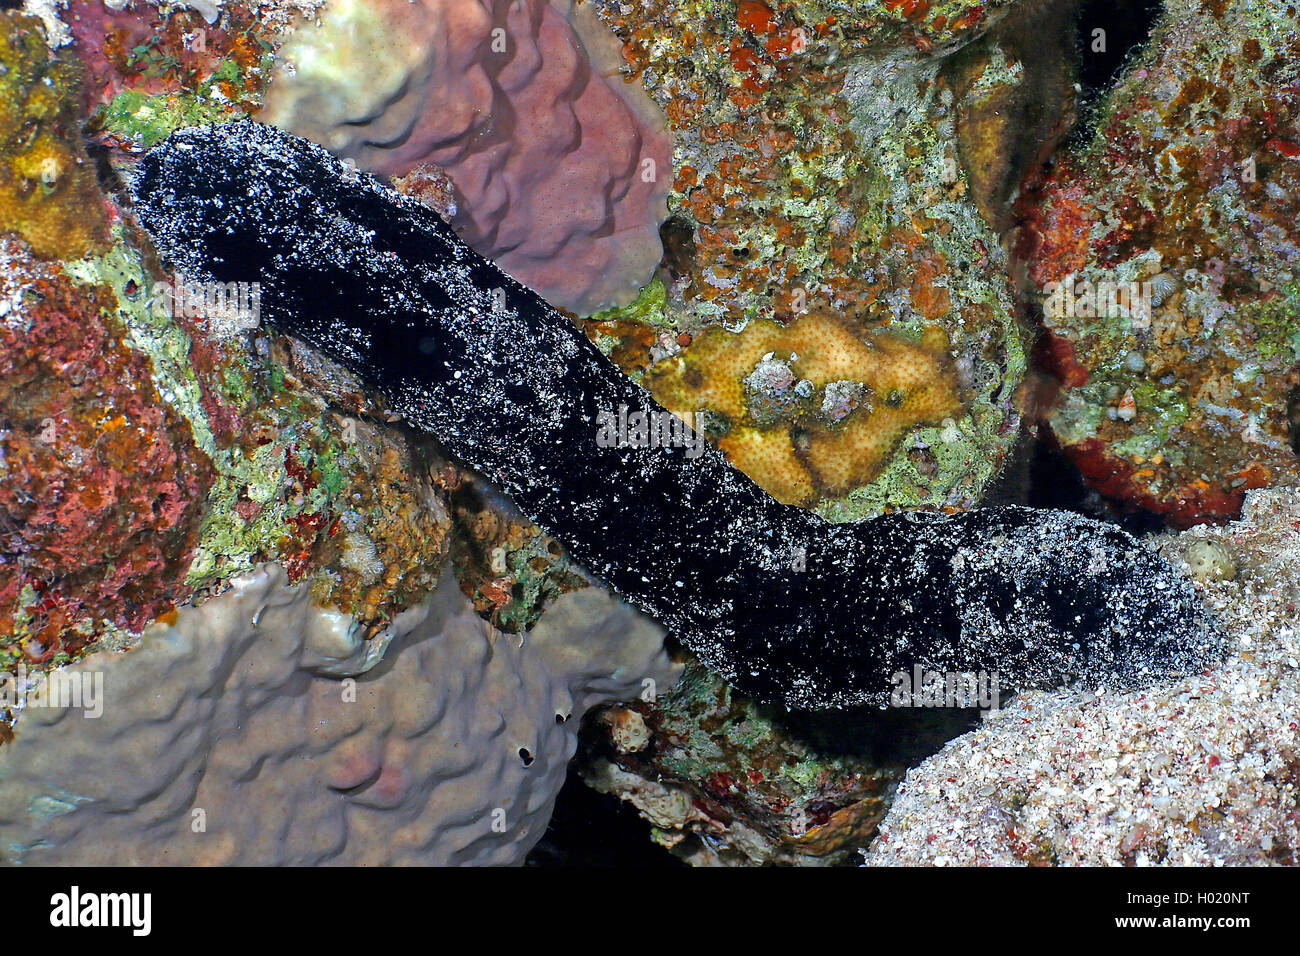 black sea cucumber (Holothuria atra), at coral reef, Egypt, Red Sea Stock Photo